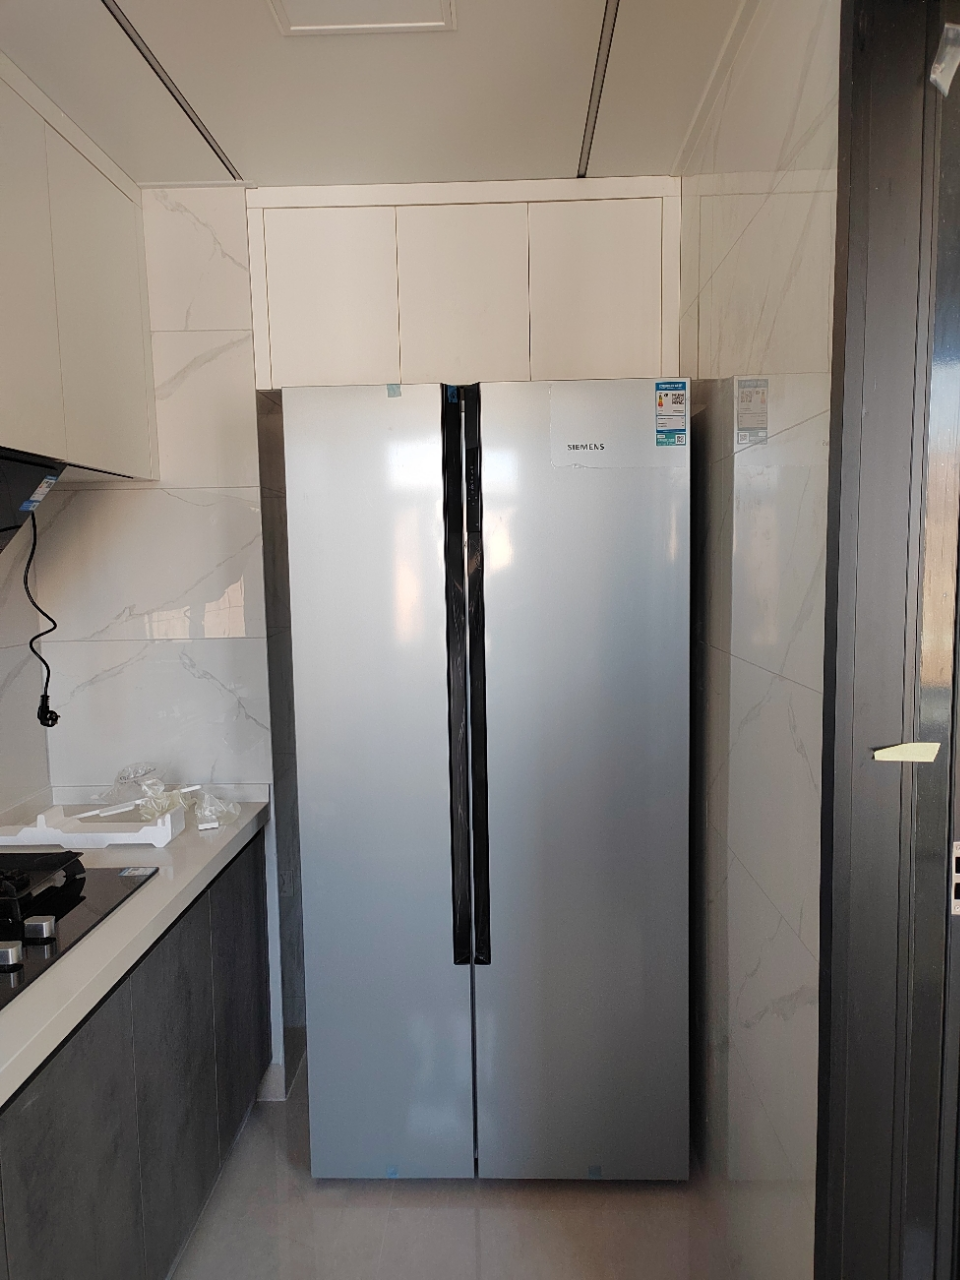 [一级节能]西门子 630升 对开门冰箱 家用大容量双开门电冰箱 风冷无霜 双循环不串味 变频节能 KA98NV143C晒单图